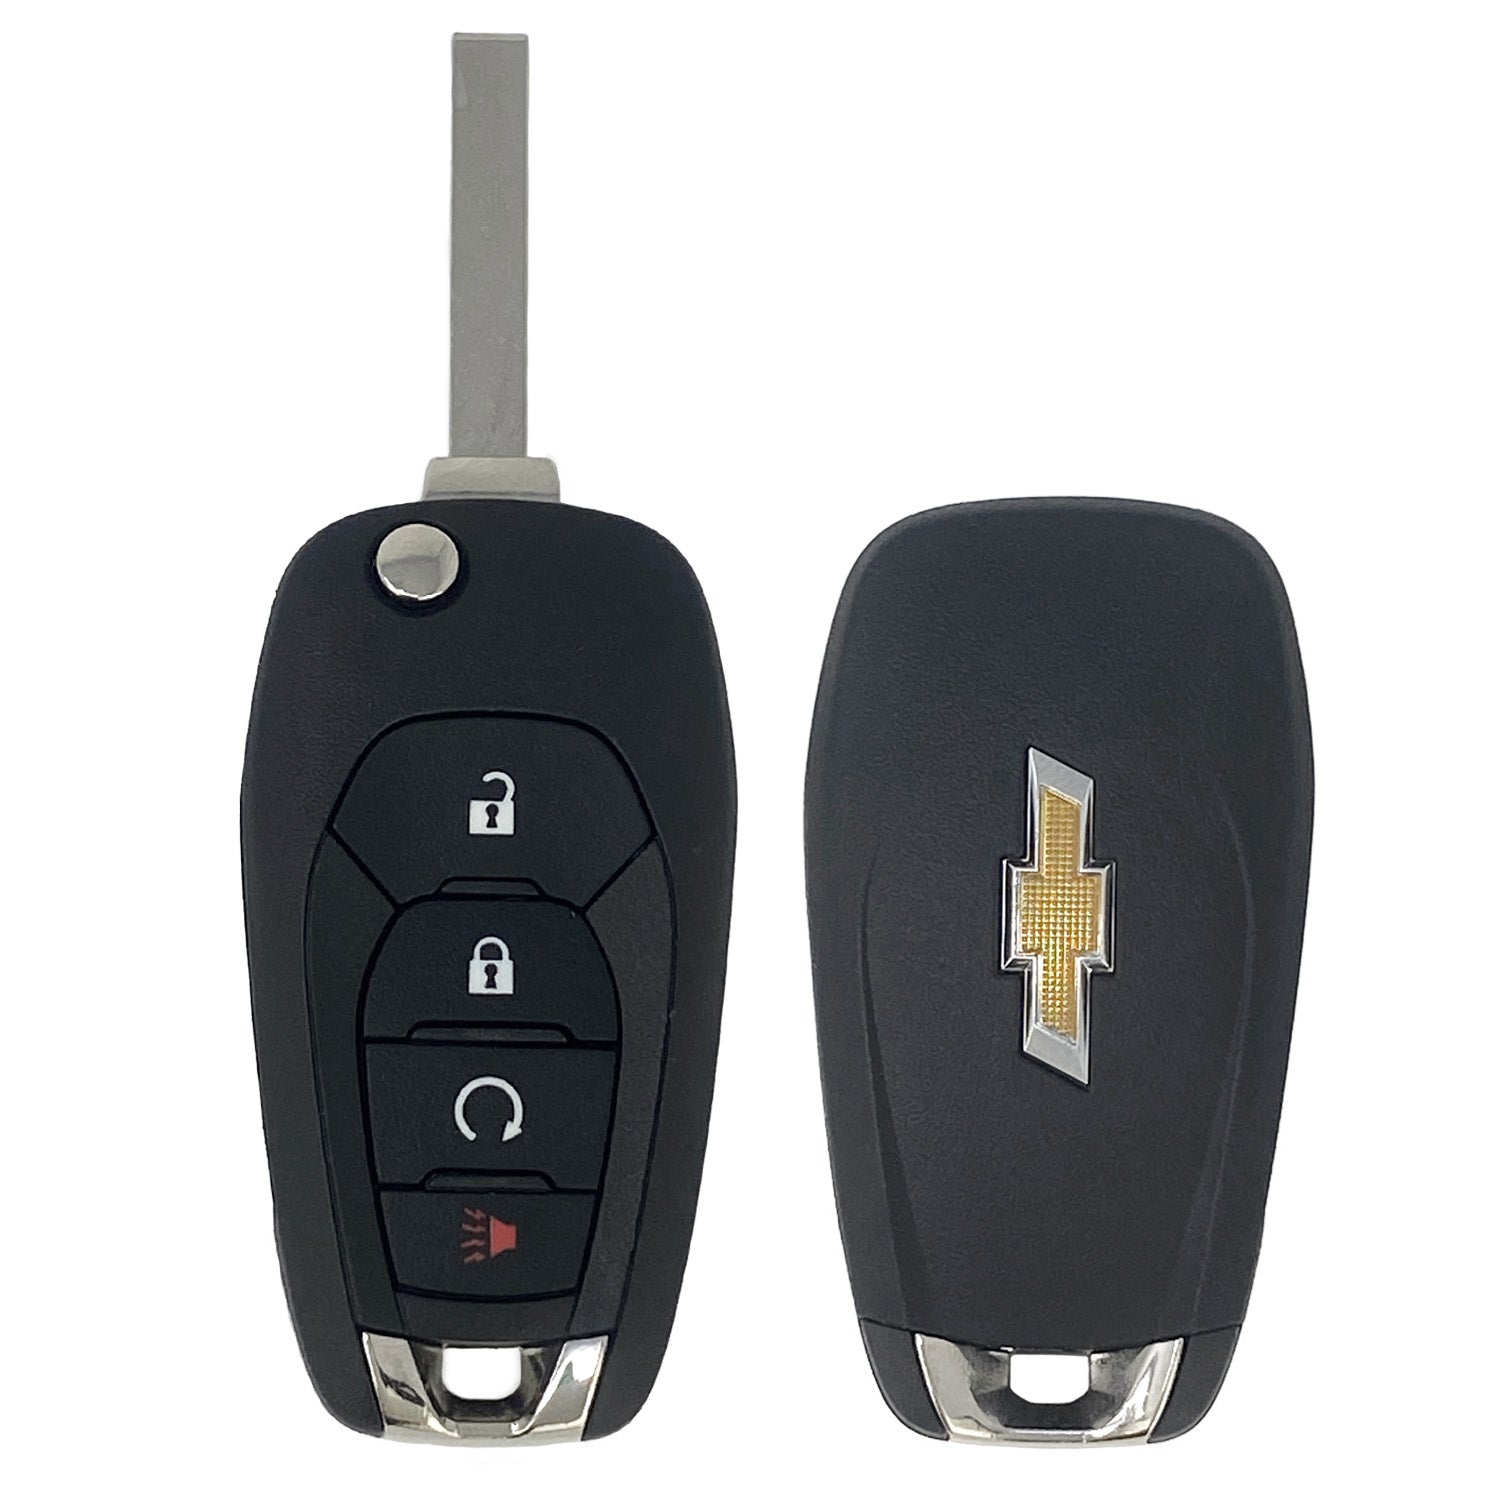 2019-2022 Chevrolet Cruze Trailblazer Flip Key 4B Remote Start LXP